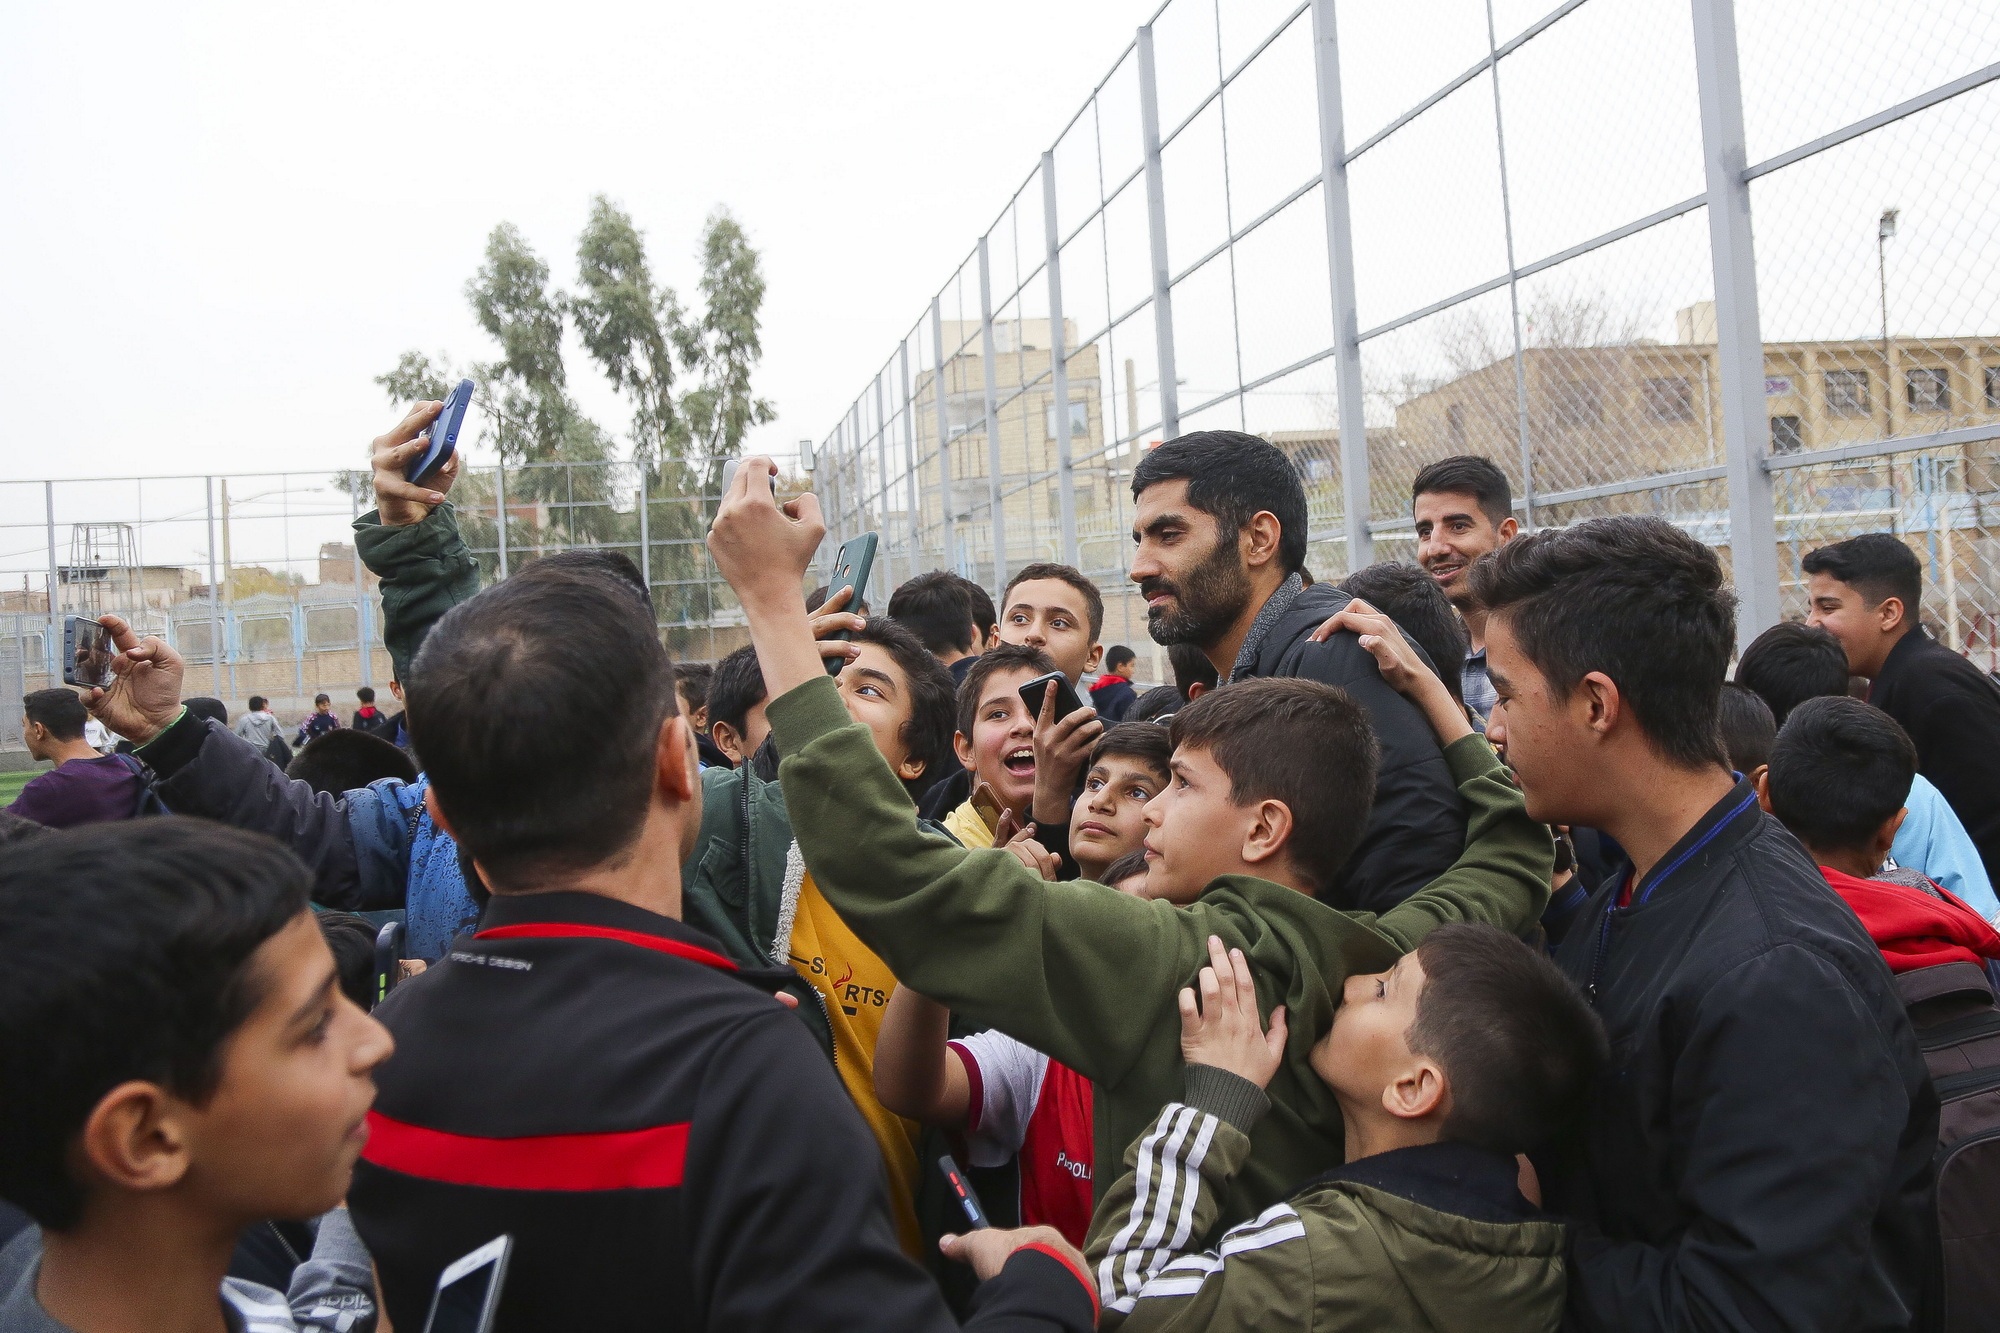 افتتاح نخستین مدرسه تربیتی فوتبال کشور در قم